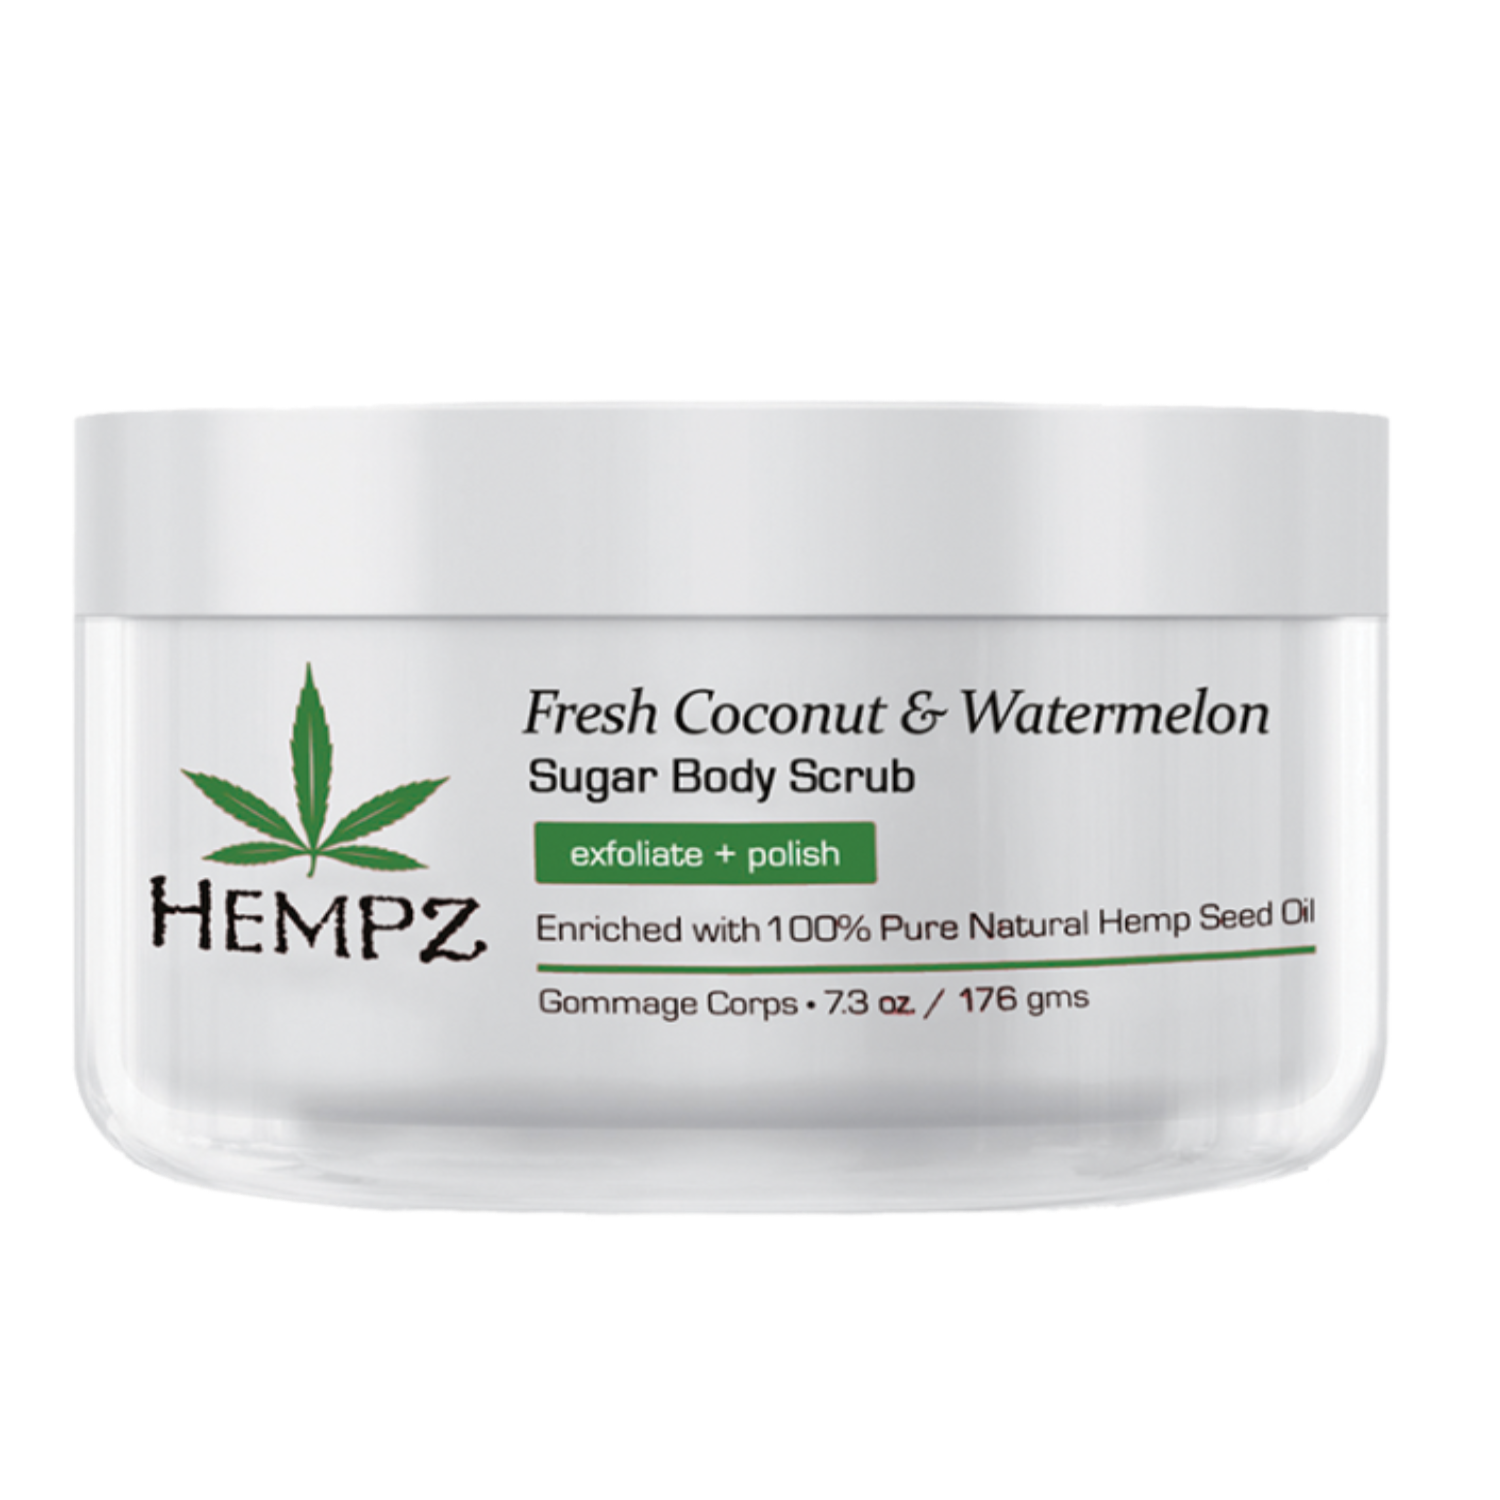 Hempz Coconut & Watermelon Sugar Scrub, 7.3 Oz. - $26.00